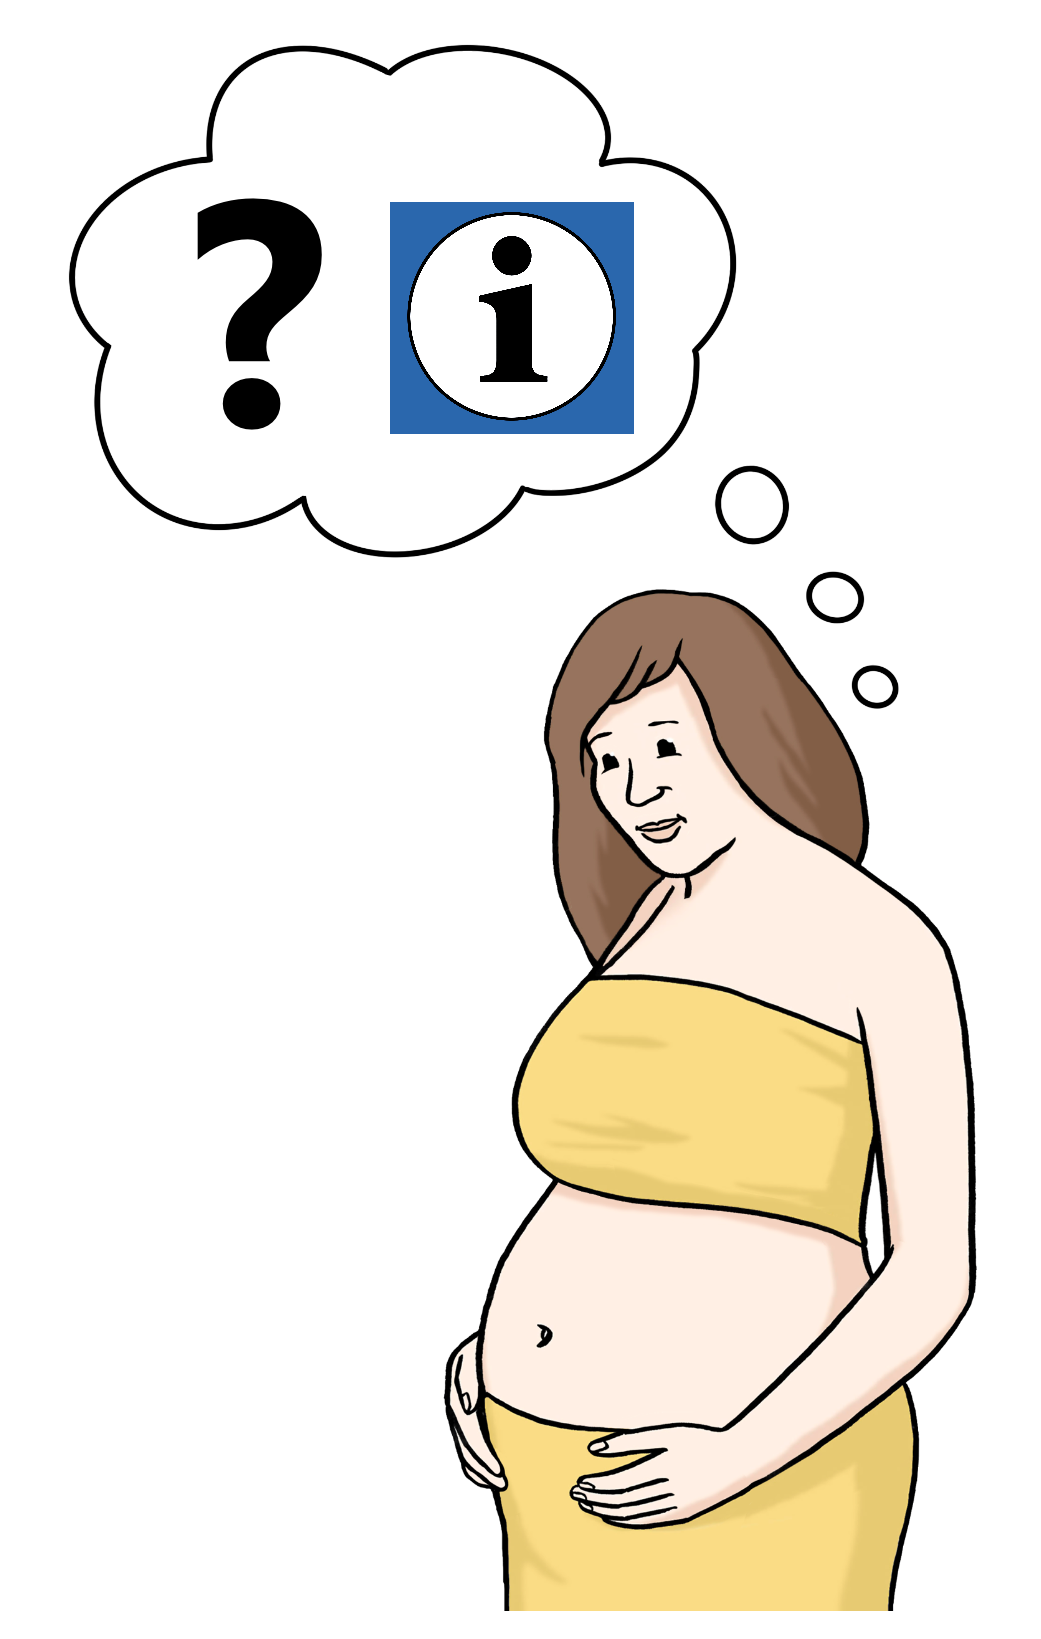 Abbildung einer schwangeren Frau. Über ihr eine Gedankenblase mit Fragezeichen und einem "i" für Information